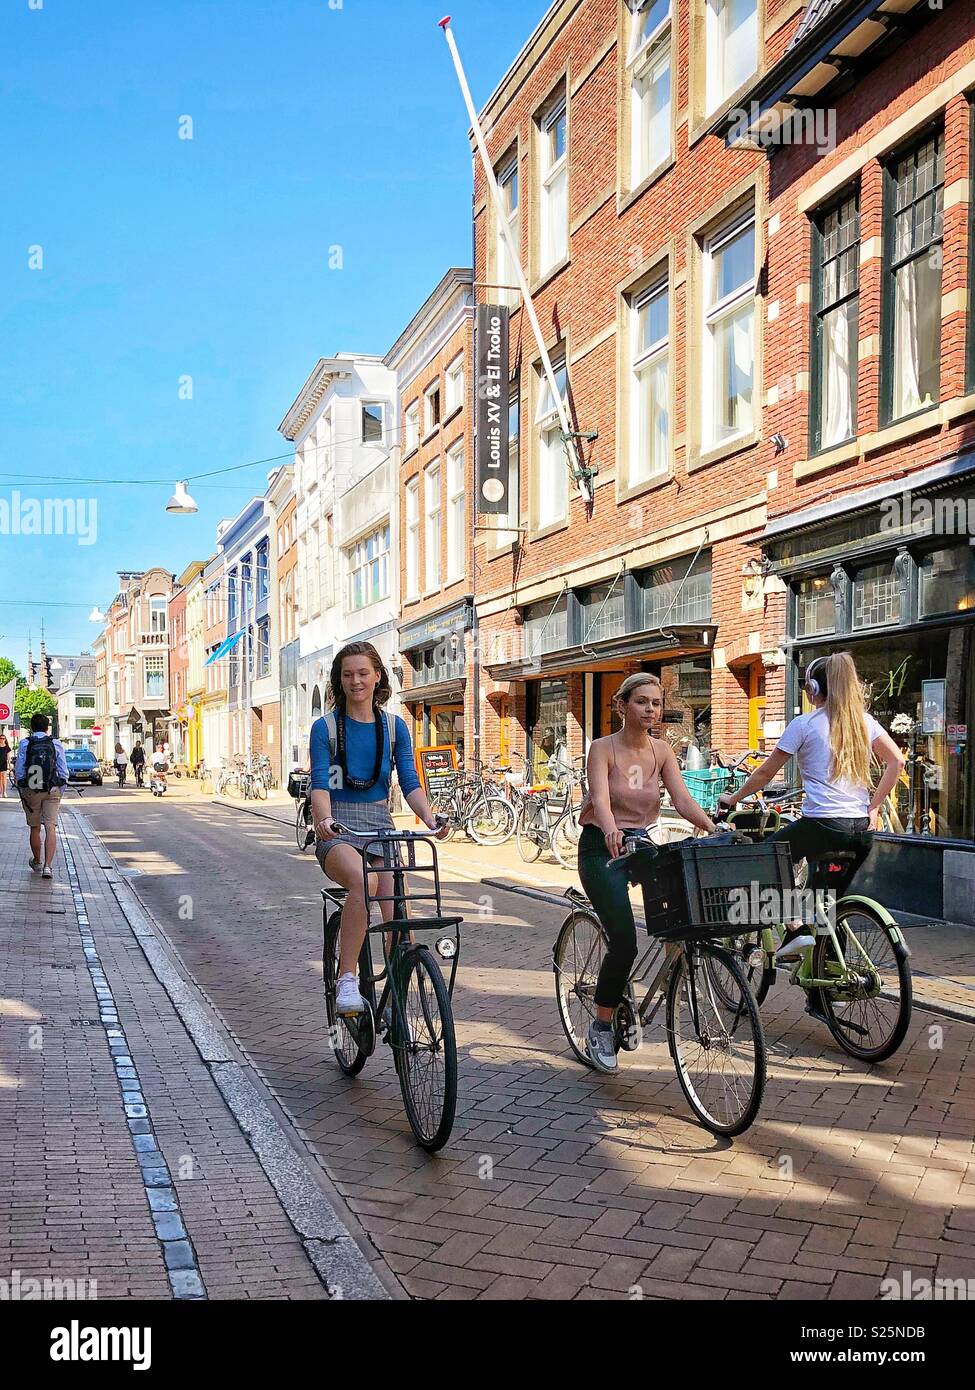 Les cyclistes de sexe féminin sur une rue. Groningen, Pays-Bas Banque D'Images